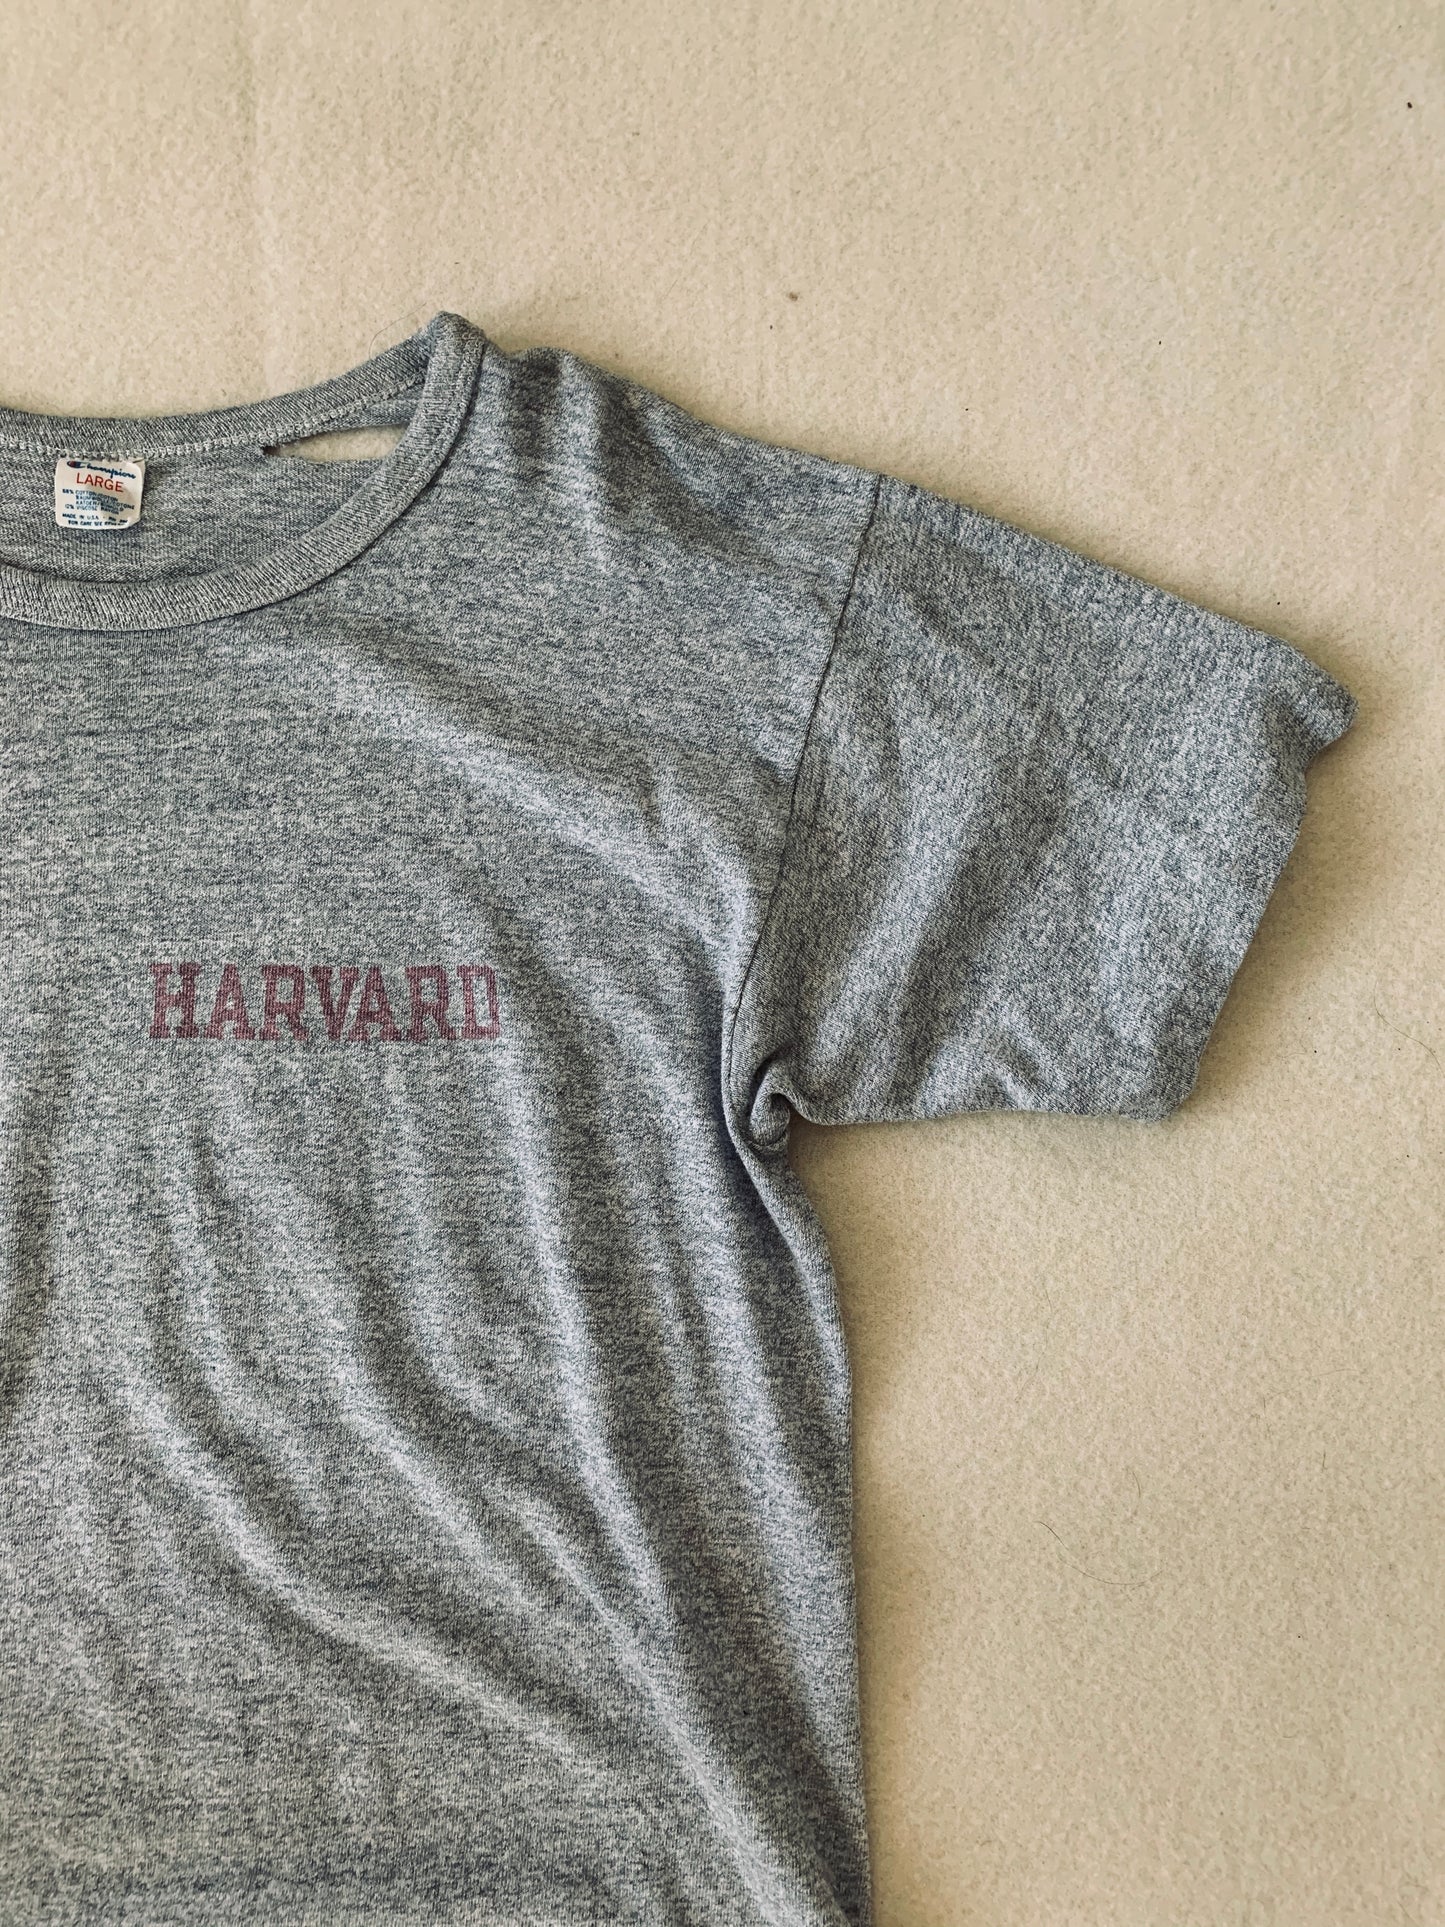 1980’s Champion “Harvard” Tee